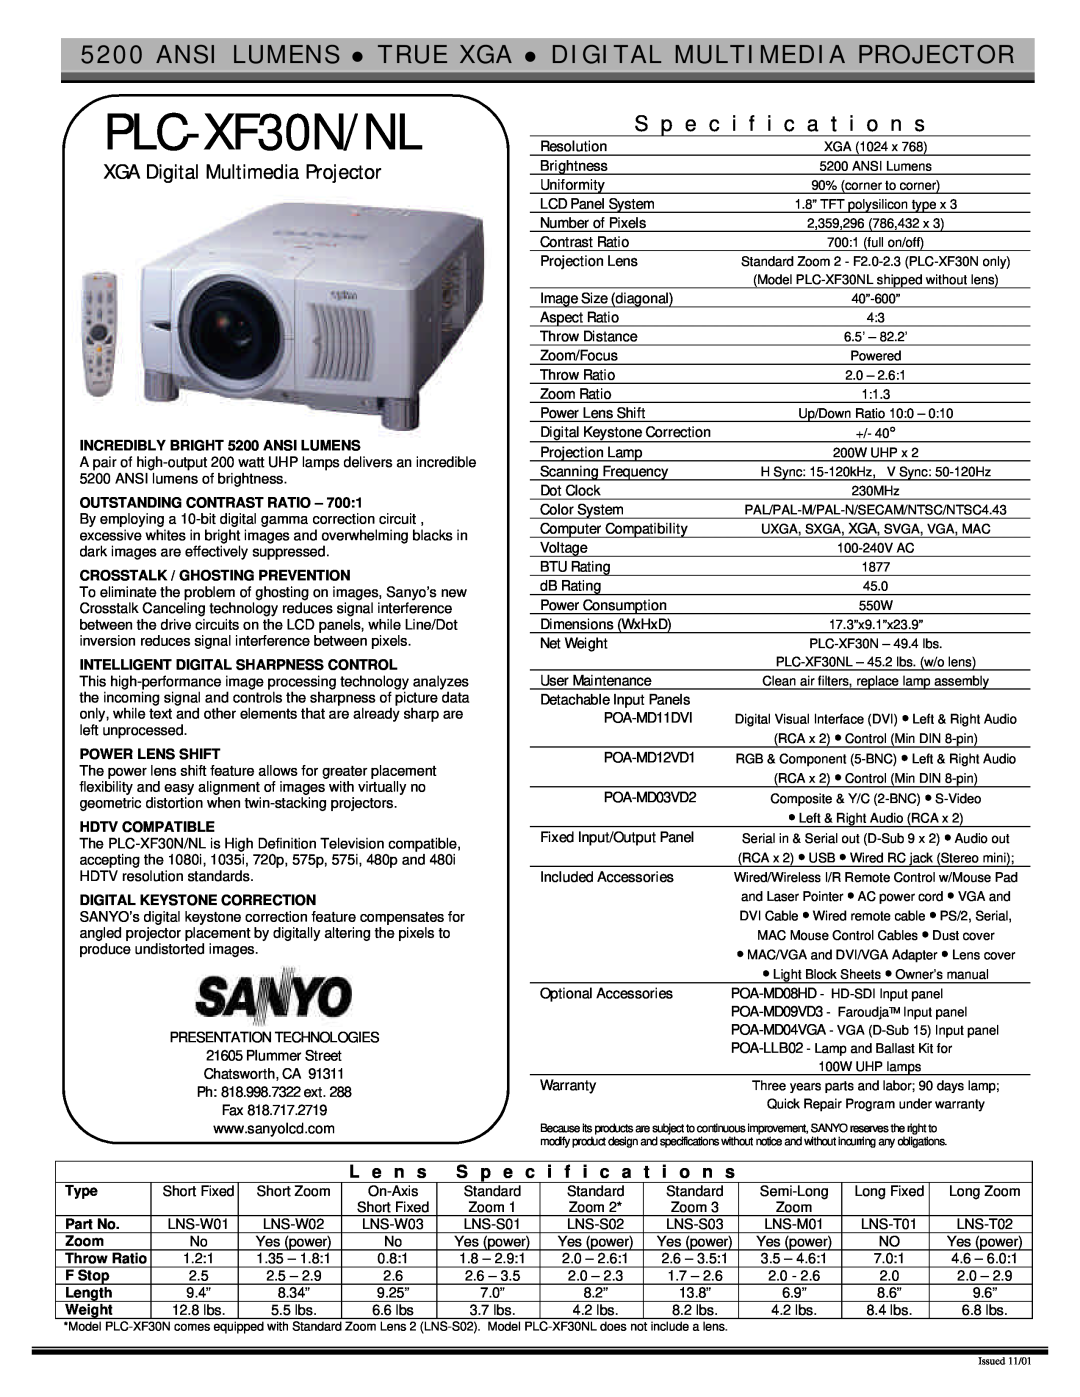 Sanyo specifications PLC-XF30N/NL, S p e c i f i c a t i o n s, XGA Digital Multimedia Projector, L e n s 